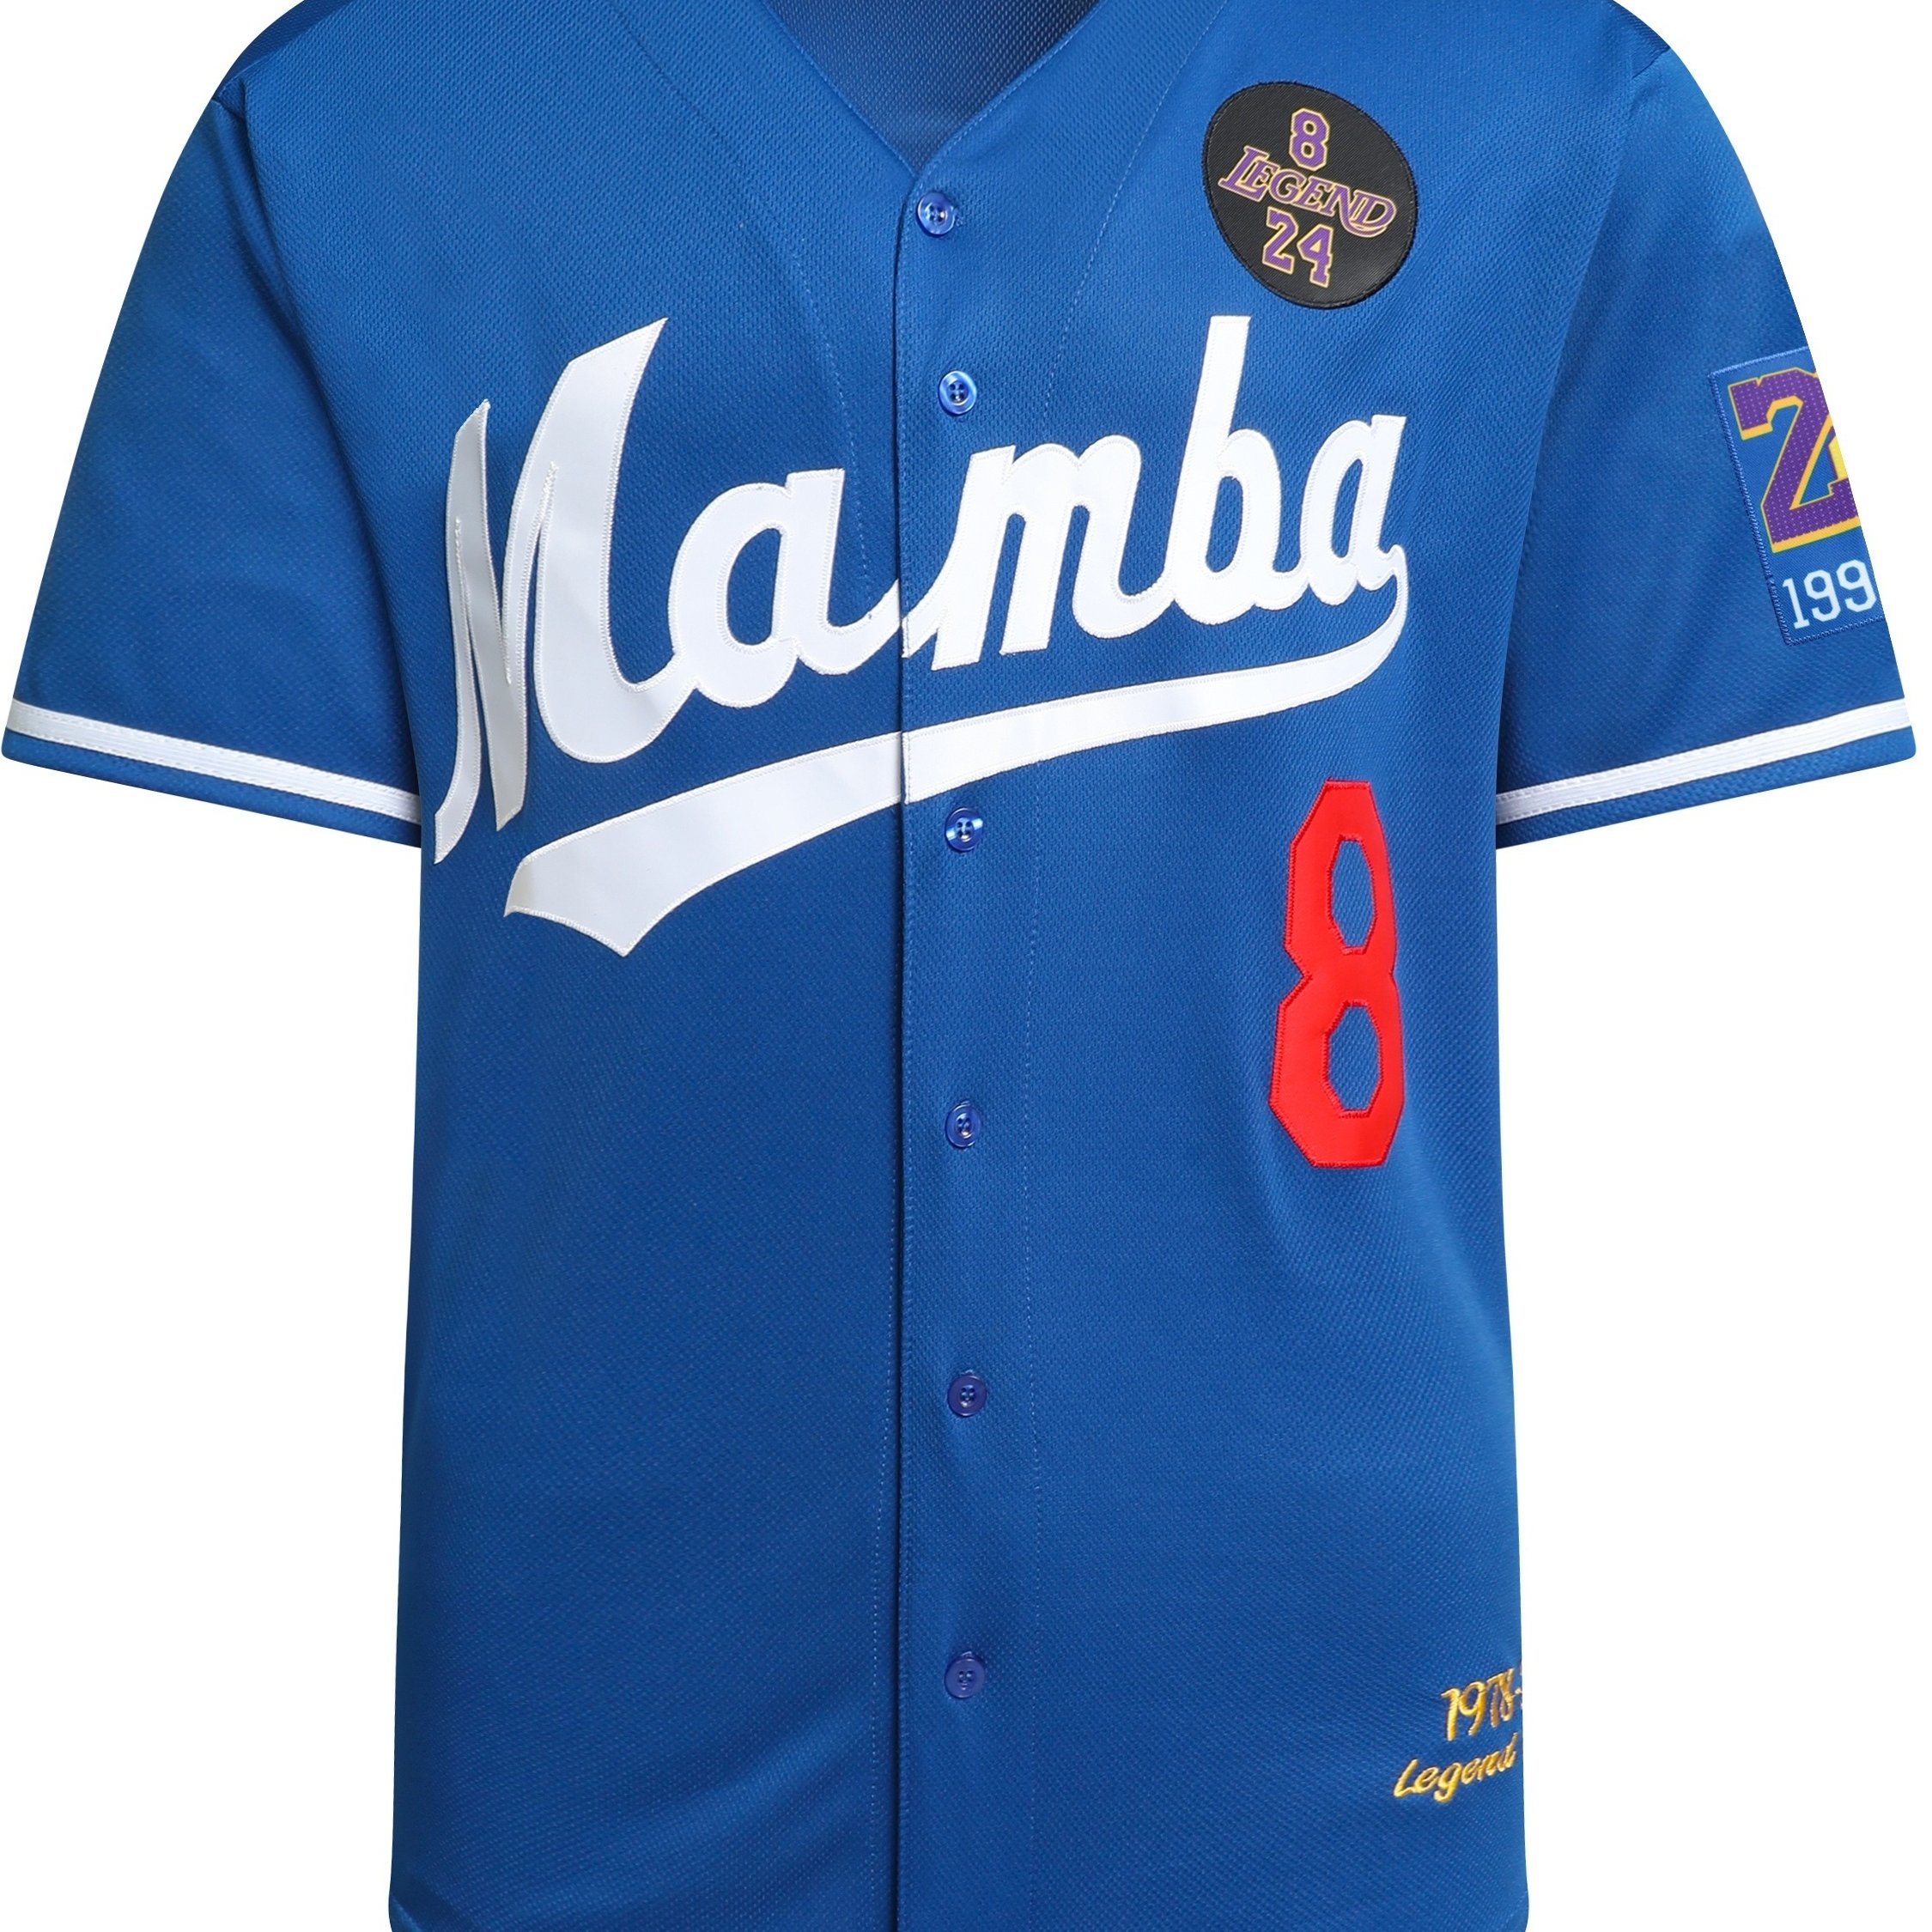 Black Mamba Baseball Jerseys Legend 8 24 Mamba Jersey Outdoor Sportswear